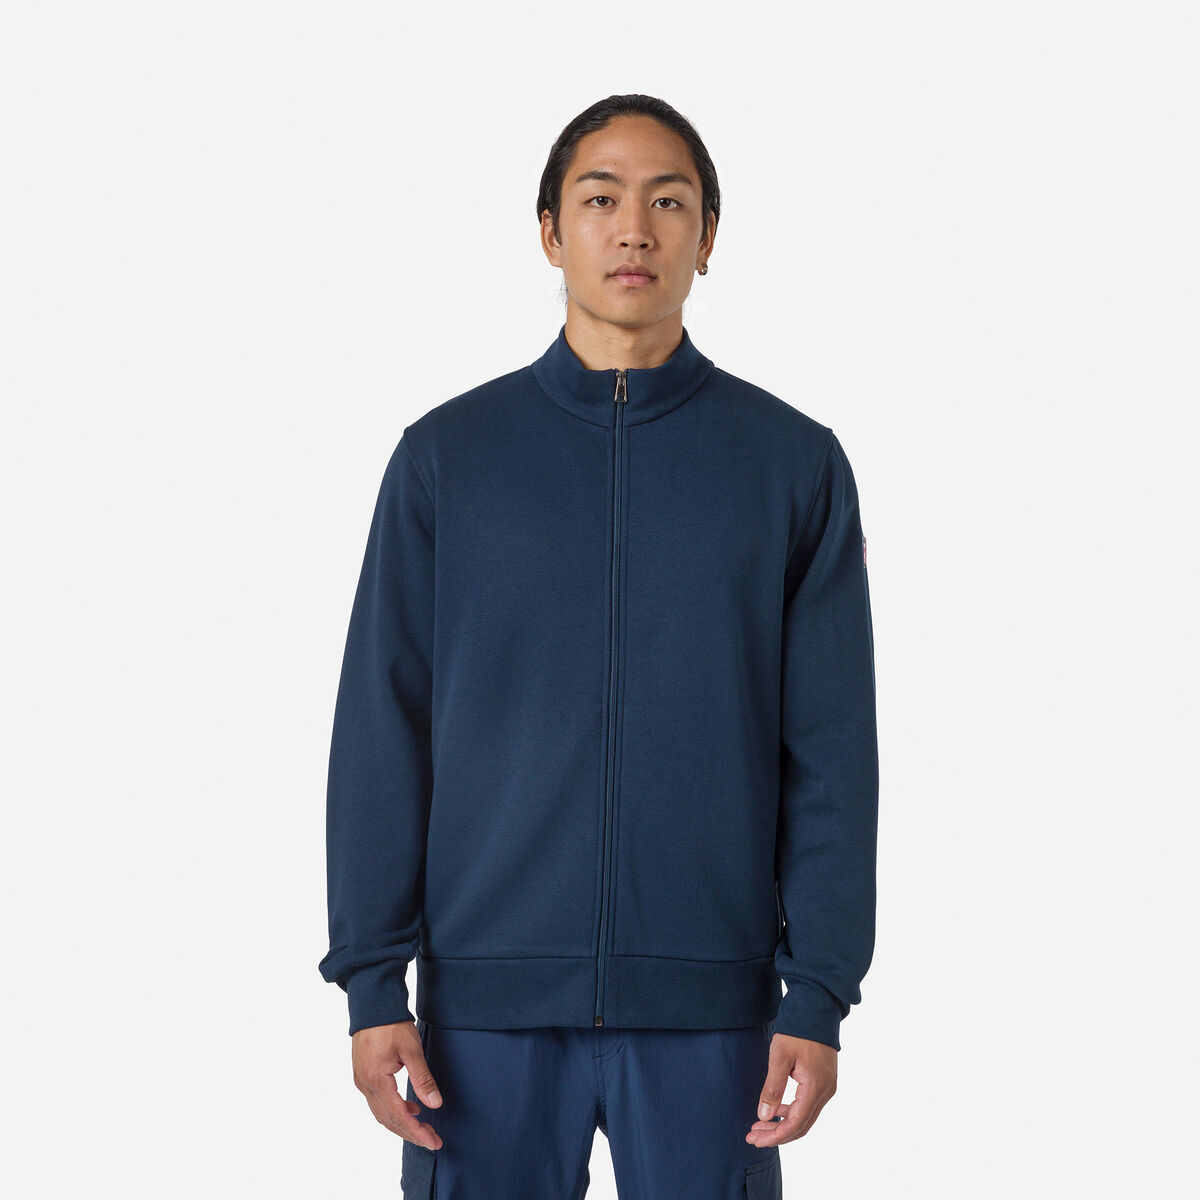 Men's full-zip logo fleece sweatshirt